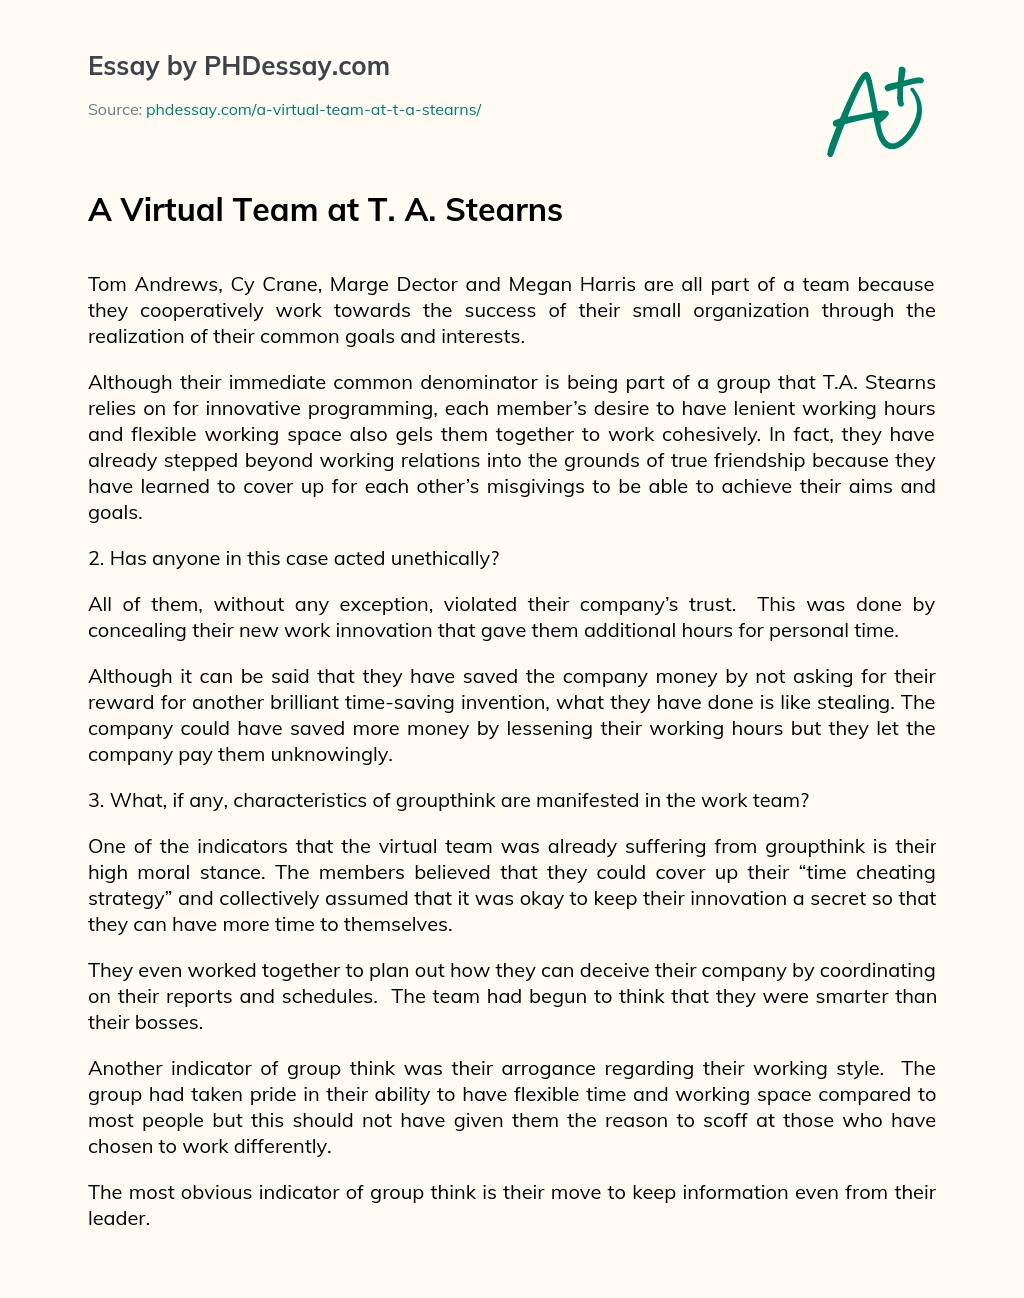 A Virtual Team at T. A. Stearns essay